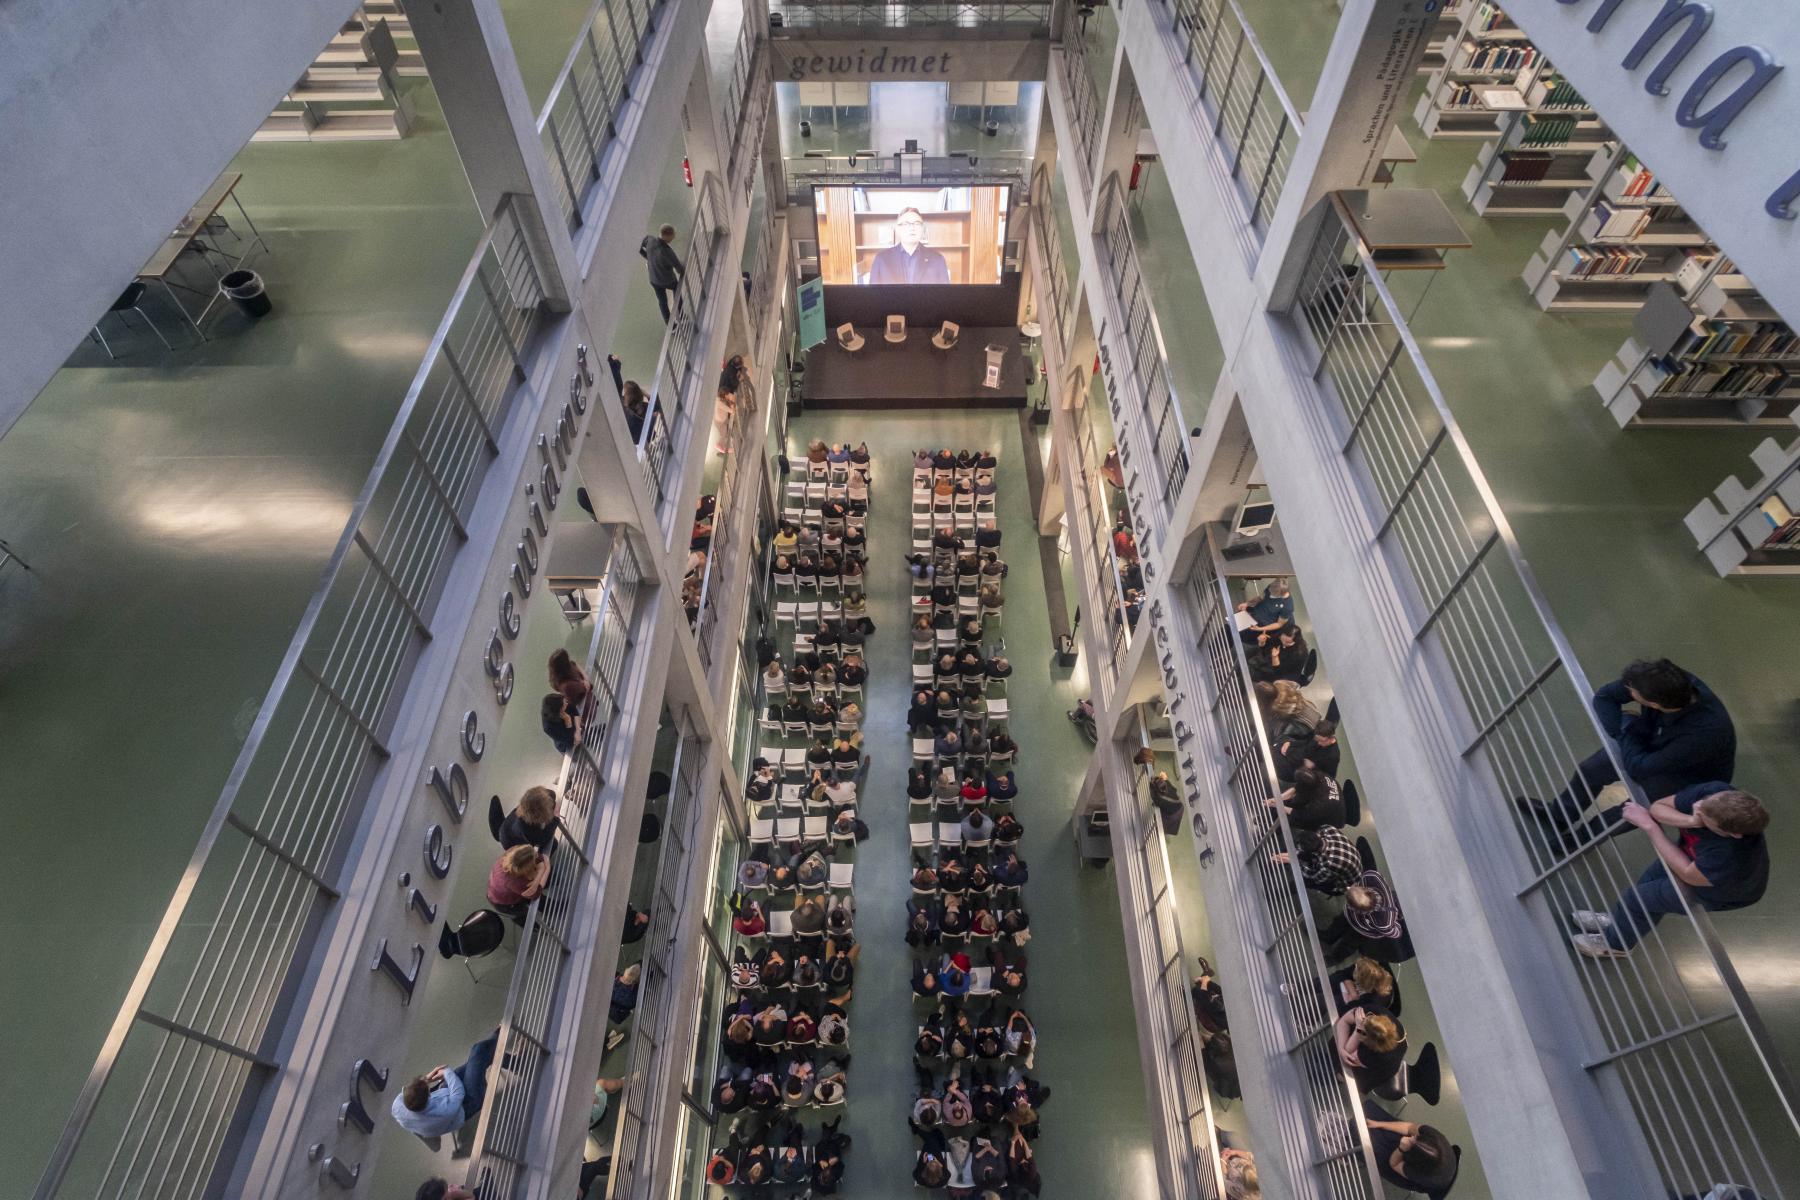 Preisverleihung Bibliotheks des Jahres 2022 in der UB der TU Berlin, voller Saal mit Publikum von oben zu sehen.